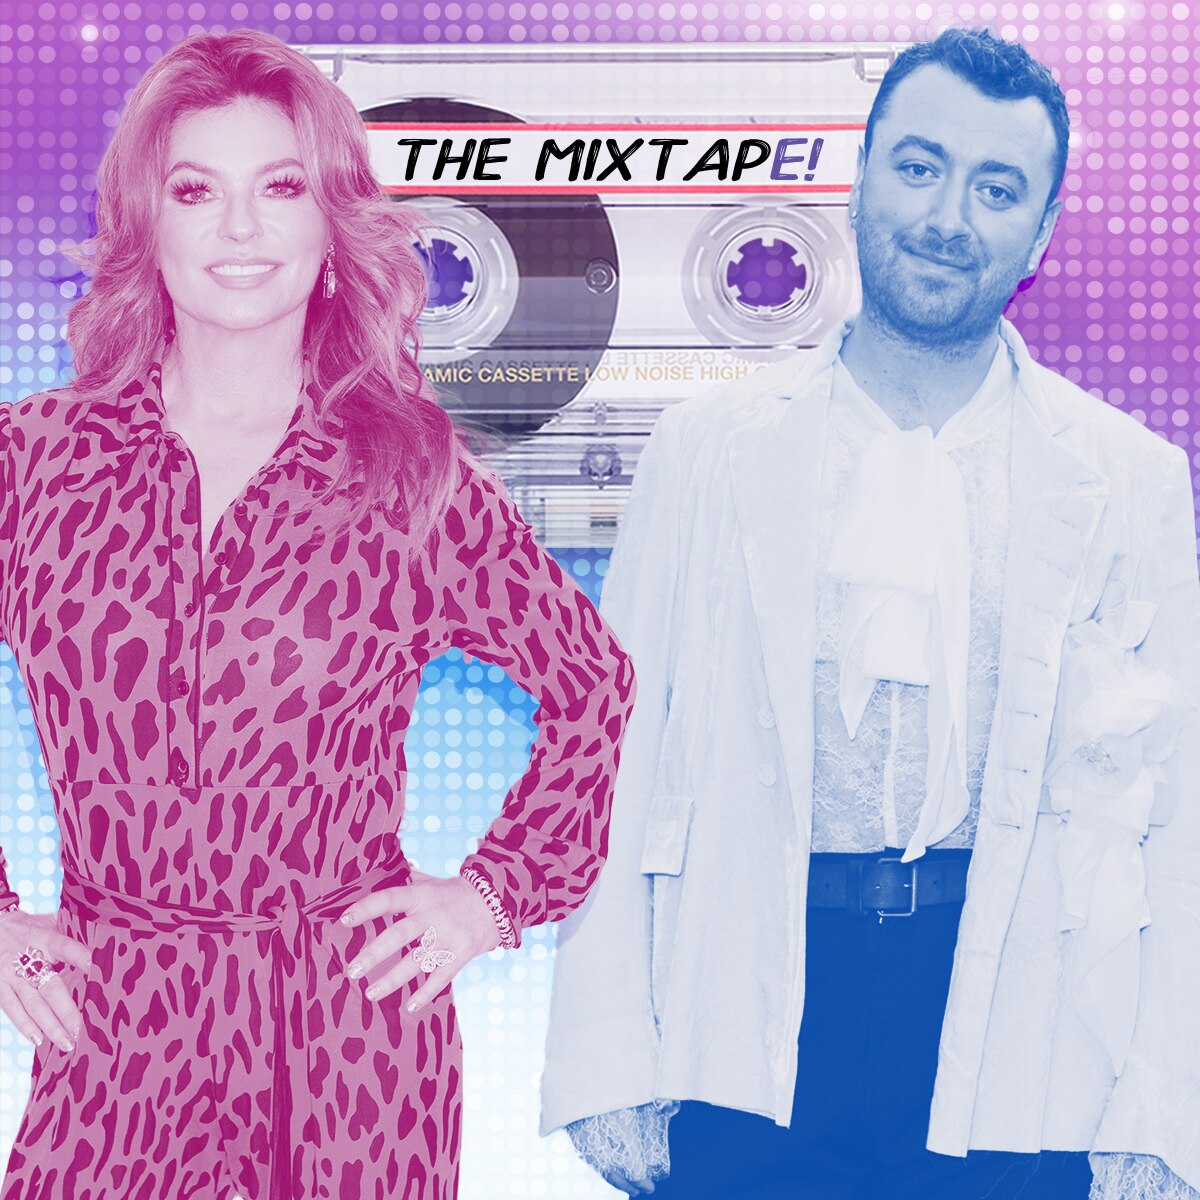 MixtapE!, Shania Twain and Sam Smith